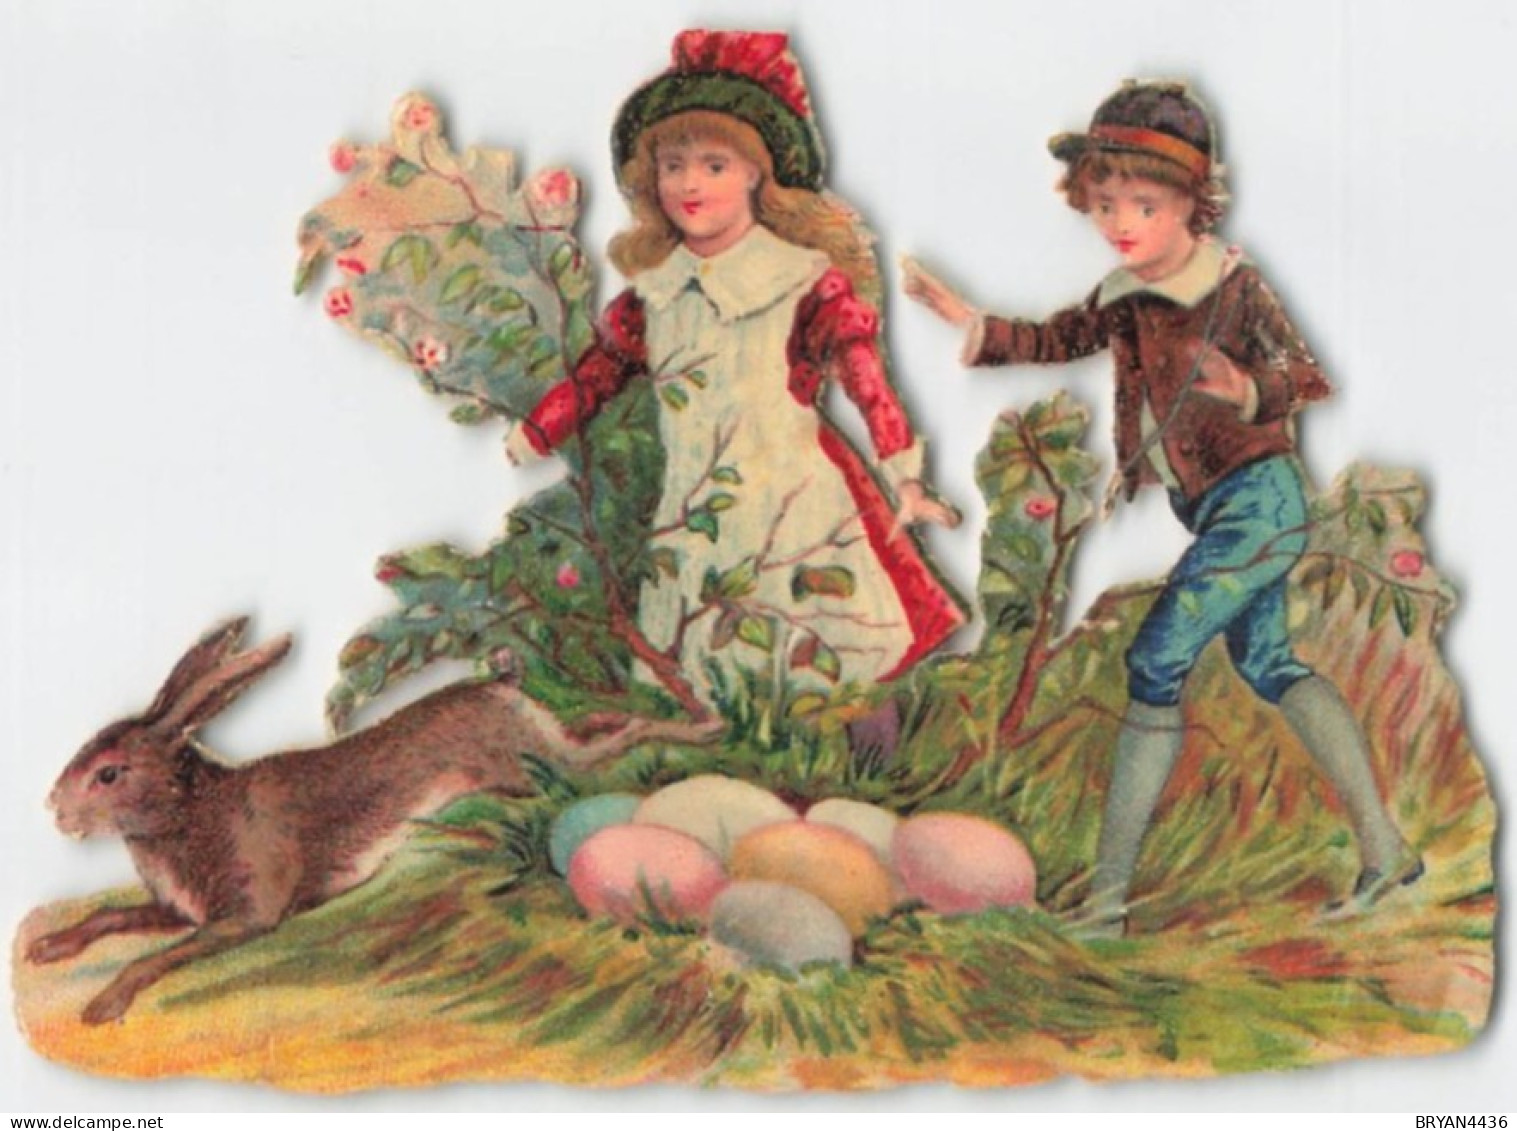 PÂQUES - LAPINS - OEUFS -  ENFANTS - TRES RARE DECOUPI GAUFFRE - 1885  - ENVERGURE FORMAT (9x12cm) - Easter